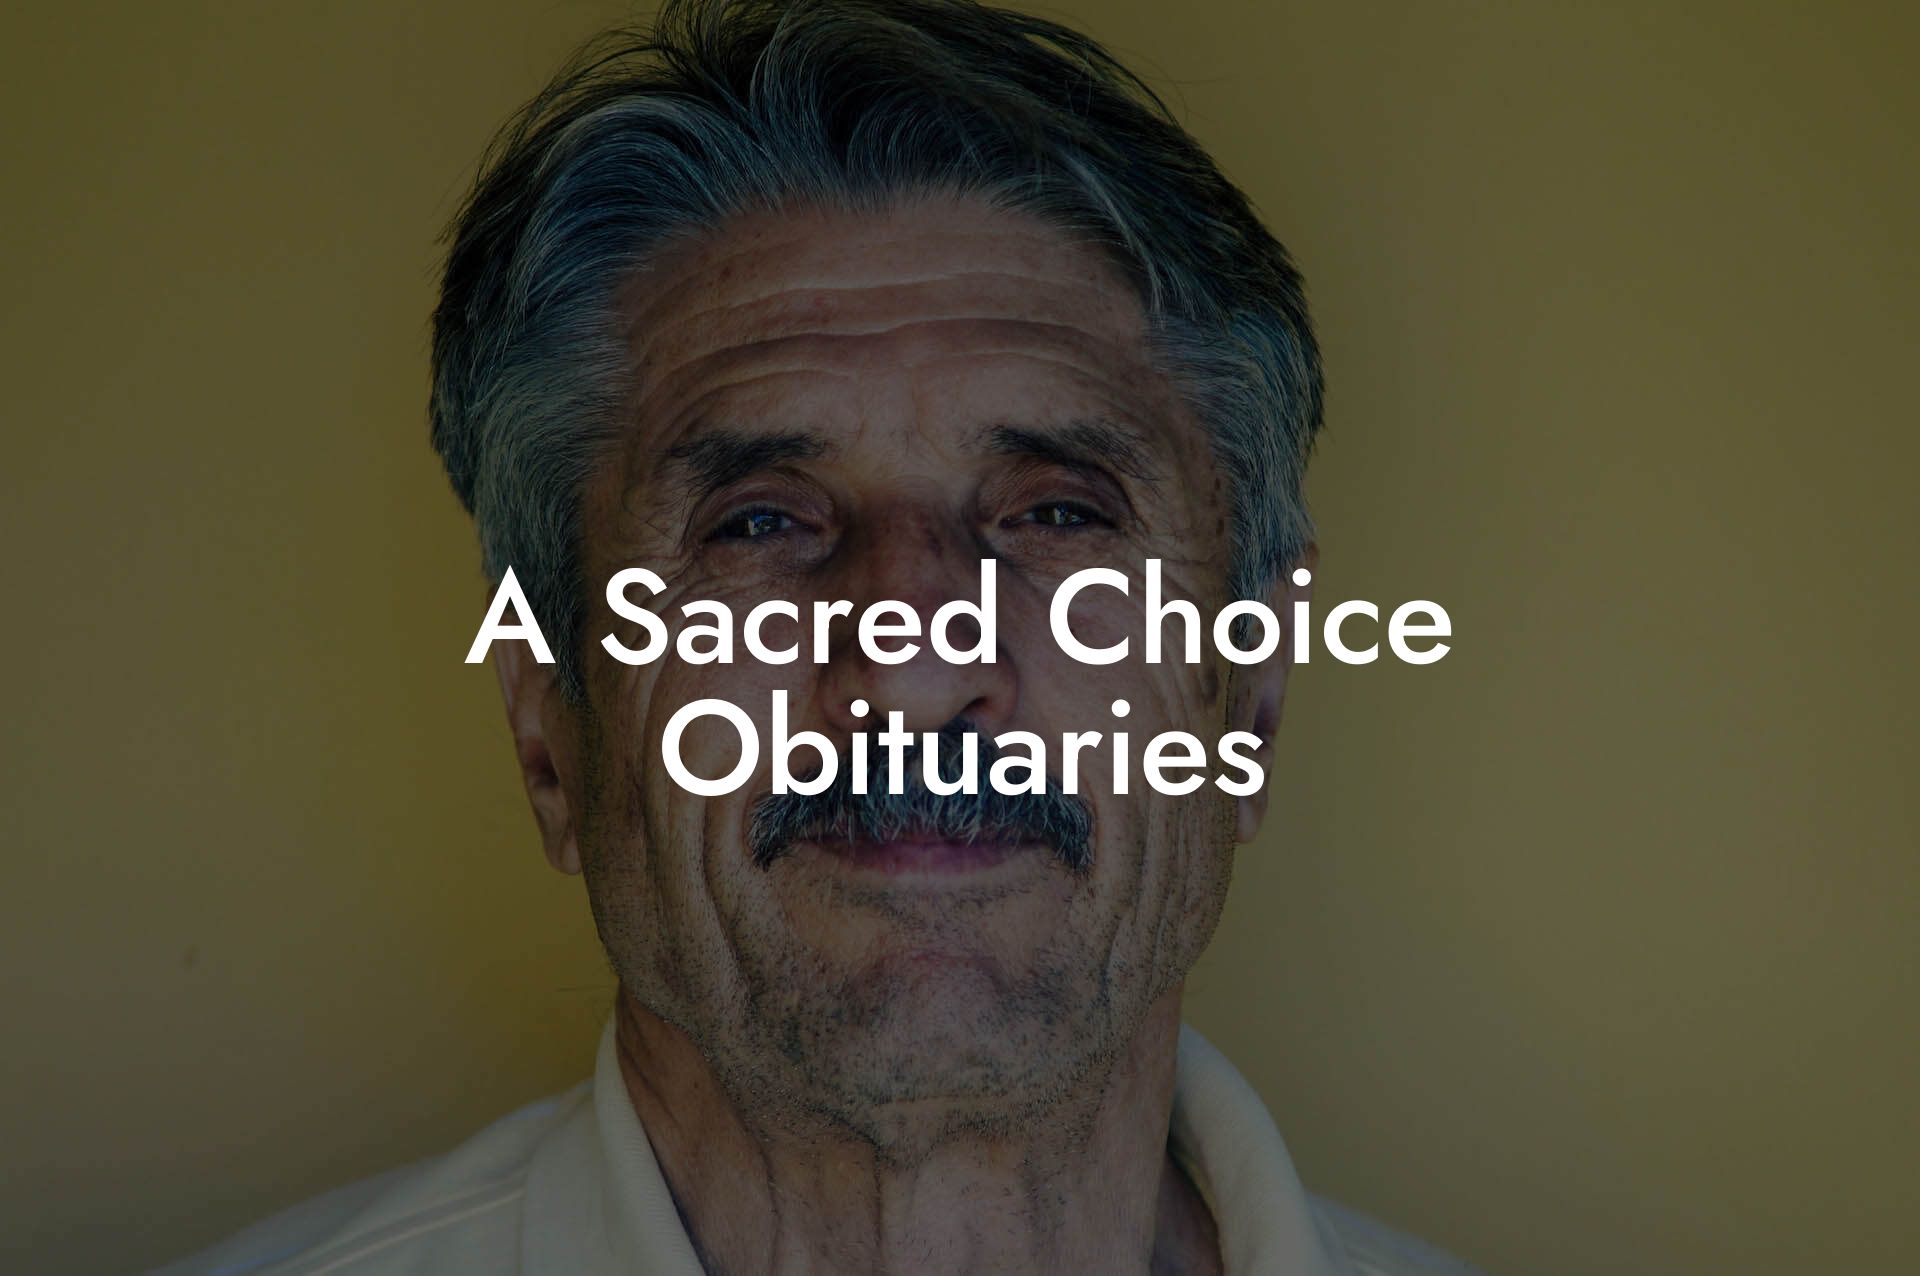 A Sacred Choice Obituaries